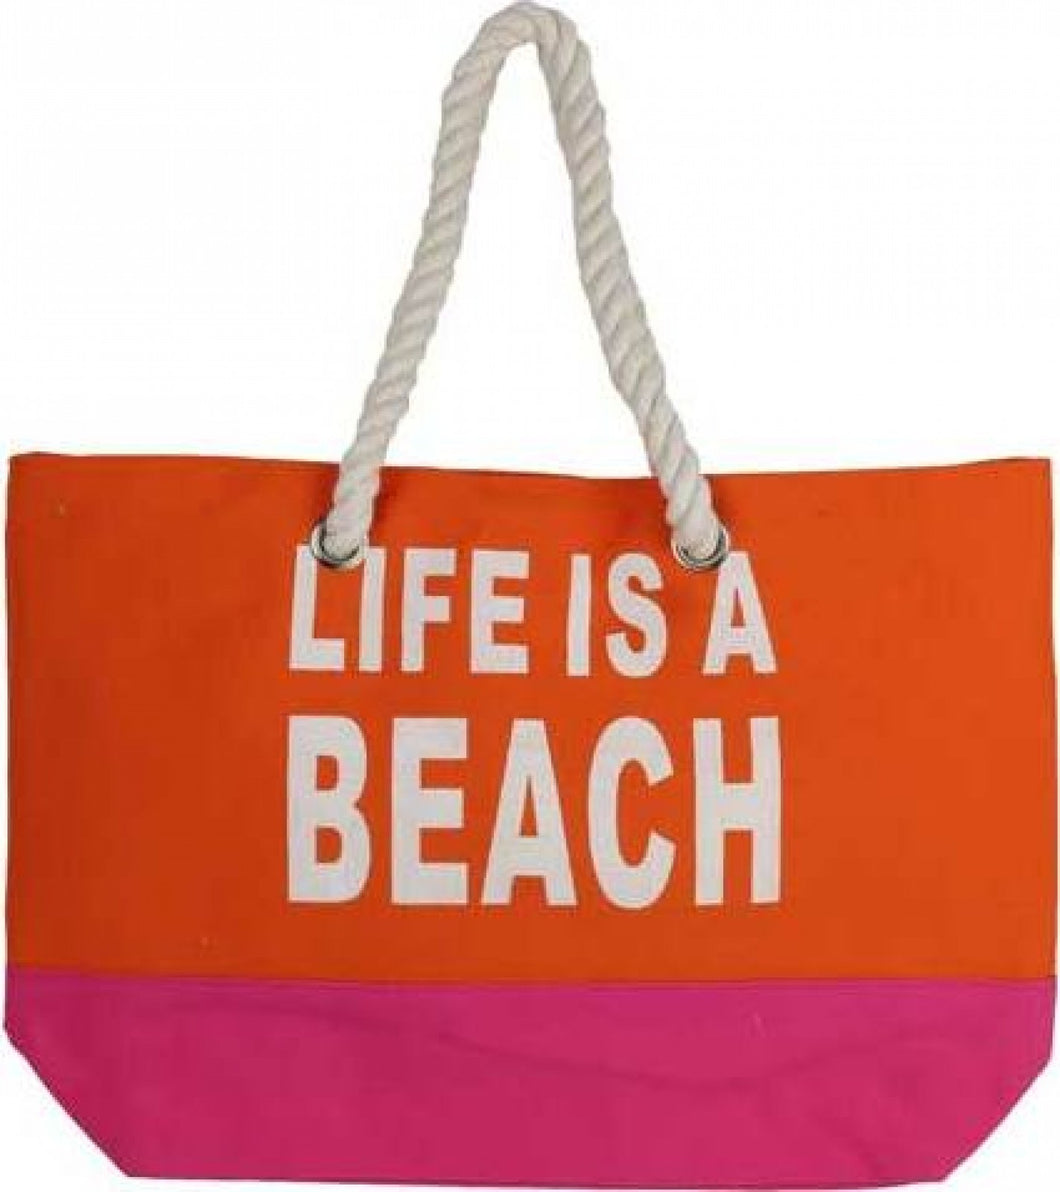 Beach Bag- Lifes a Beach